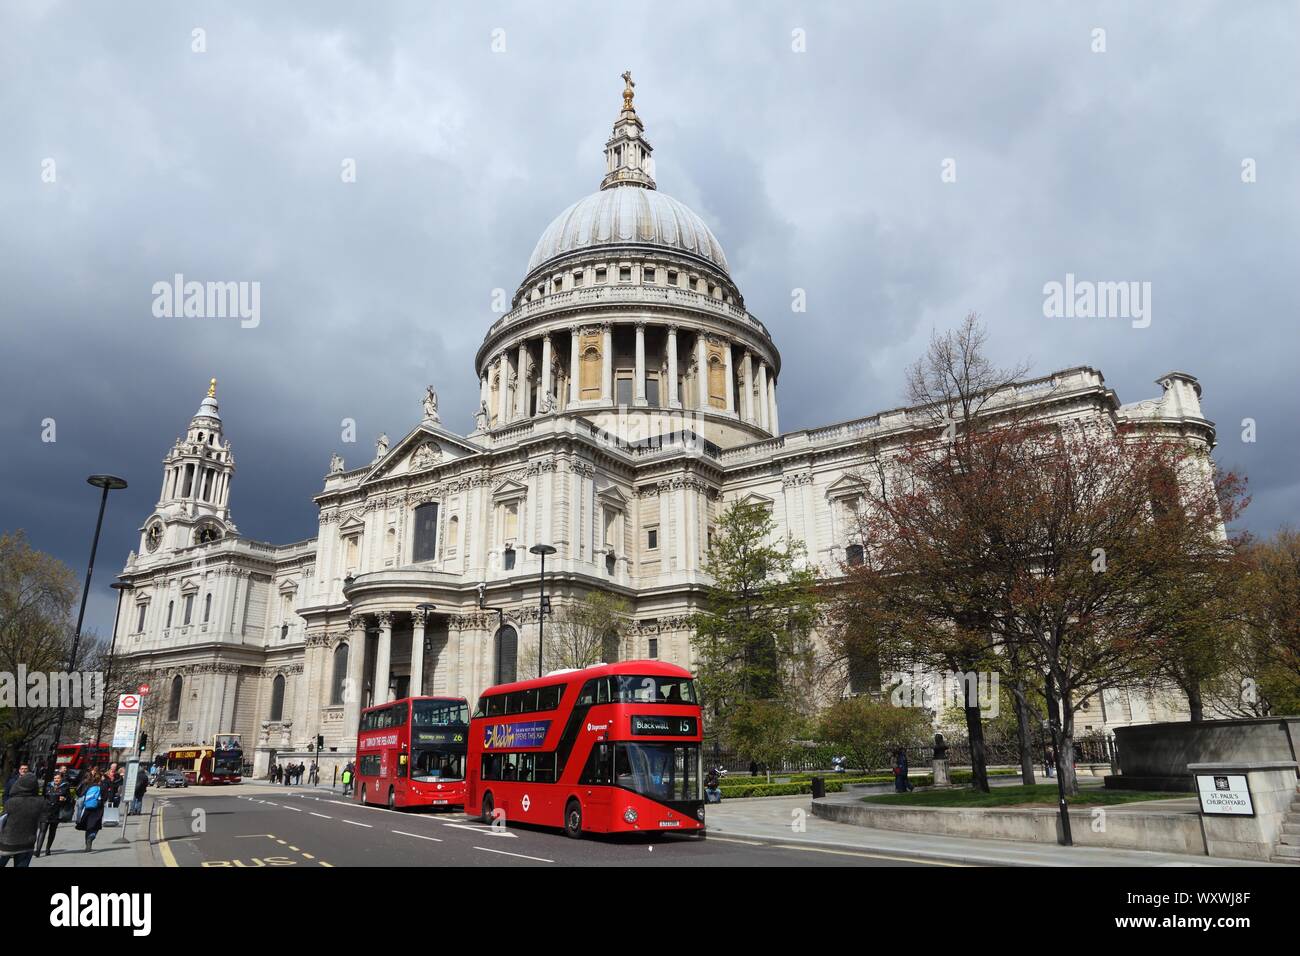 LONDON, Regno Unito - 23 Aprile 2016: la gente ride autobus della città di Londra, Regno Unito. Trasporto per Londra (TFL) opera 8.000 autobus su 673 rotte. Foto Stock